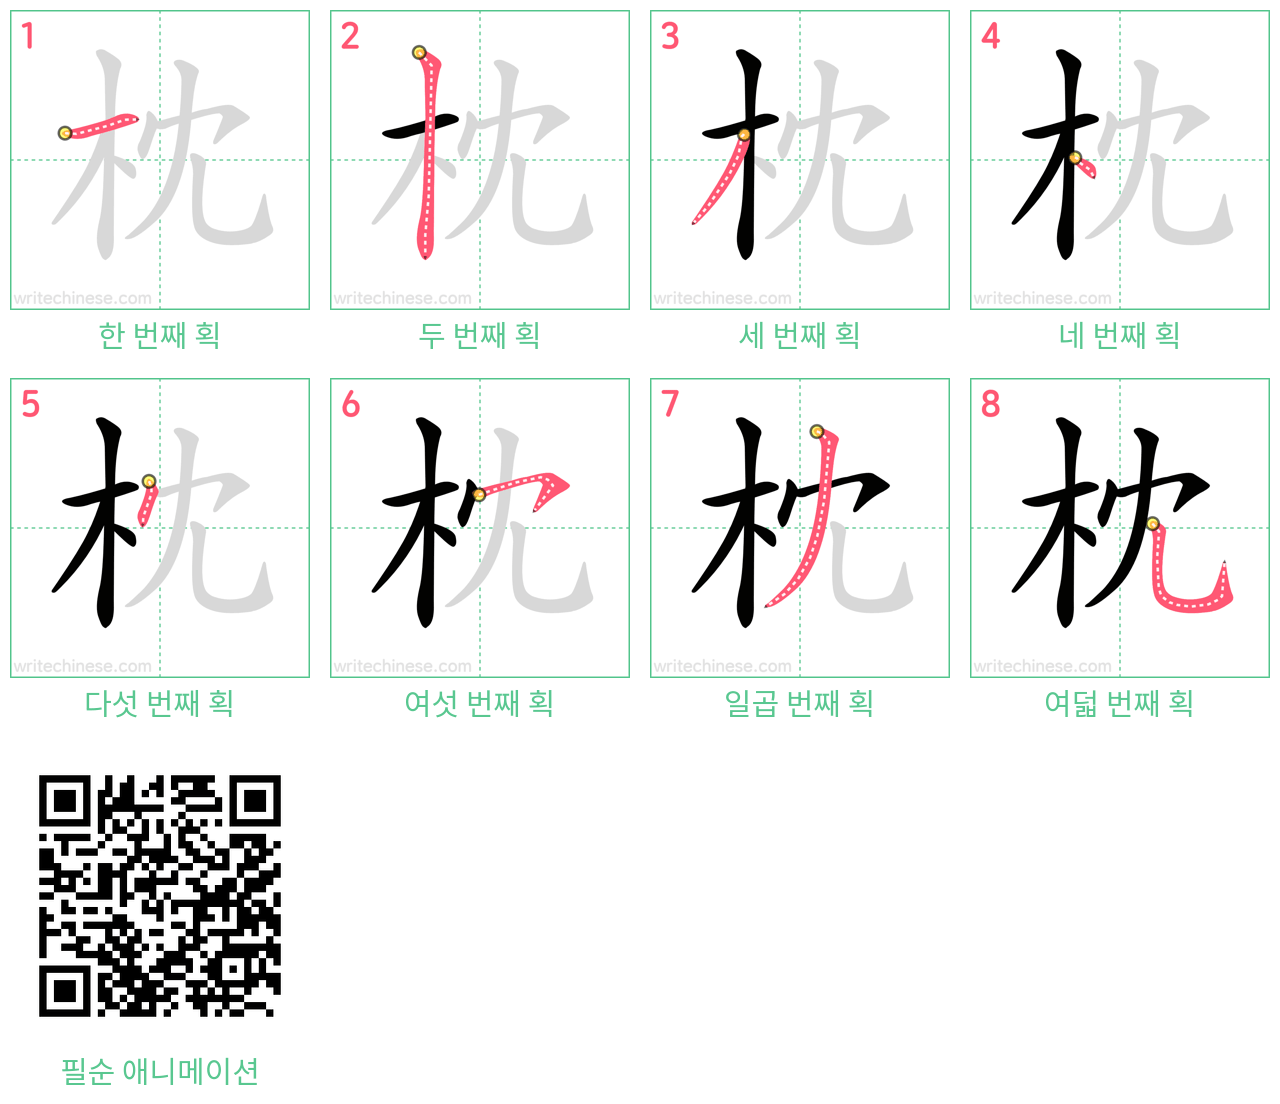 枕 step-by-step stroke order diagrams